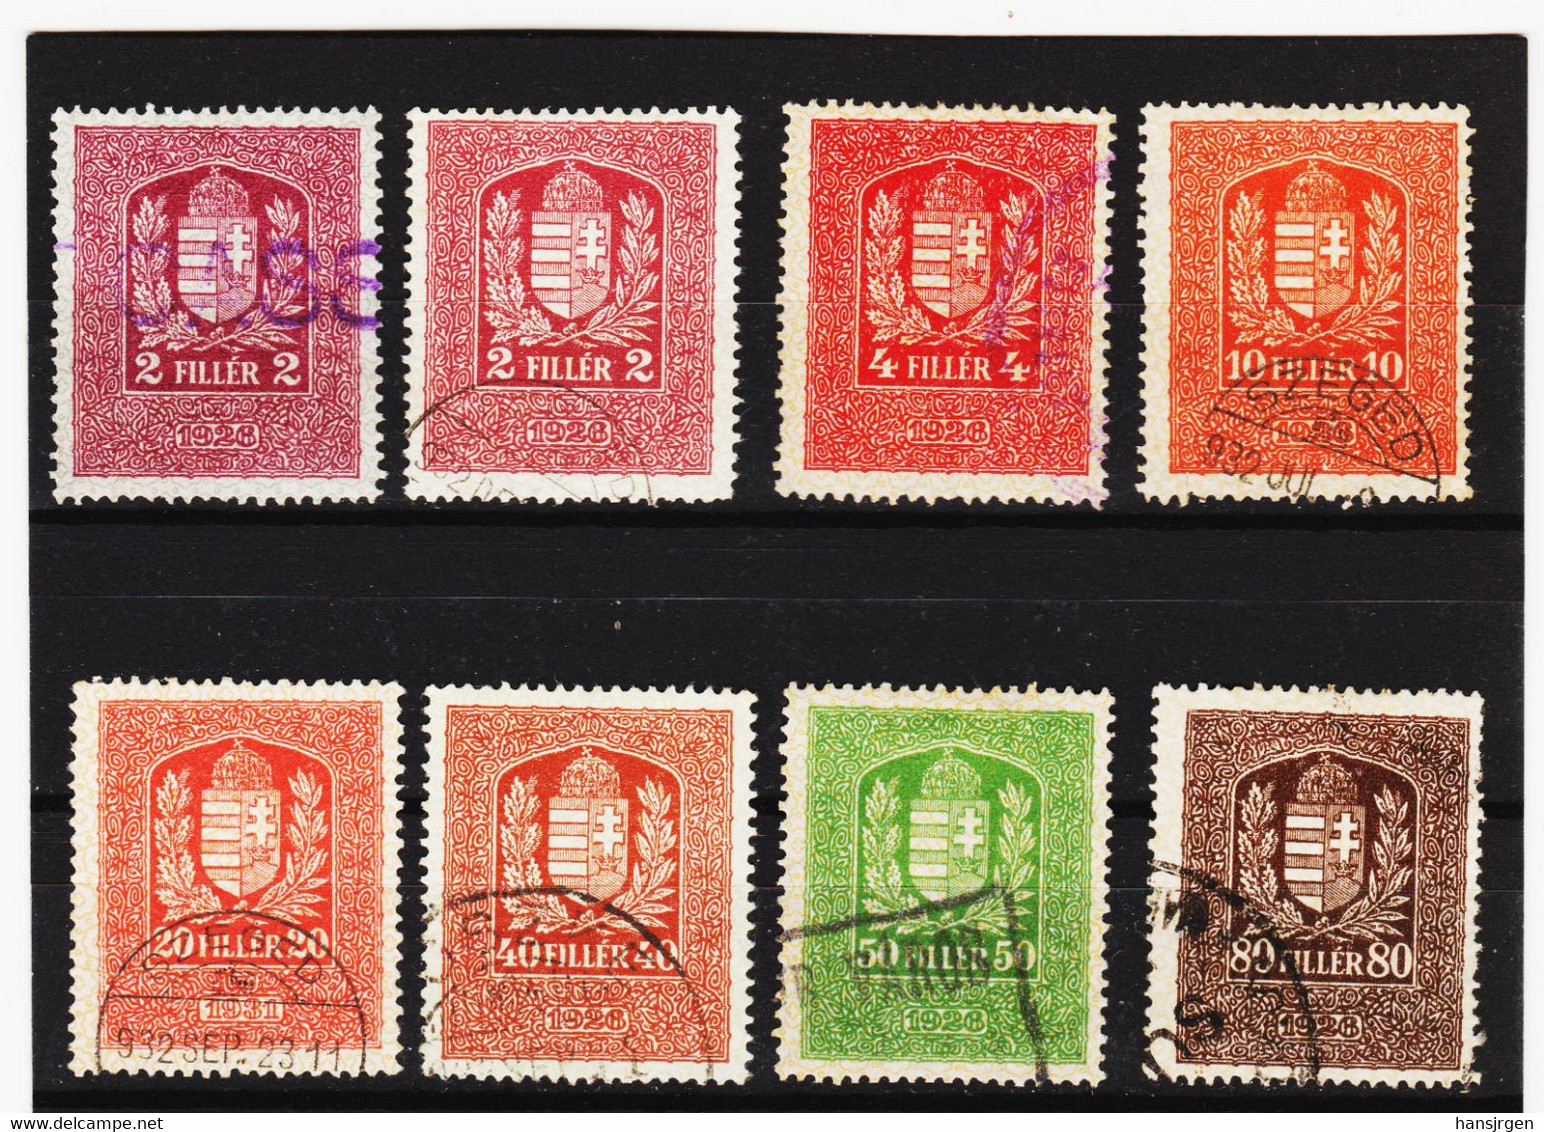 CAO66 UNGARN 1926 STEUERMARKEN - STEMPELMARKEN 2-4-10-20-40-50-80 FILLER Gestempelt / Entwertet SIEHE ABBILDUNG - Revenue Stamps